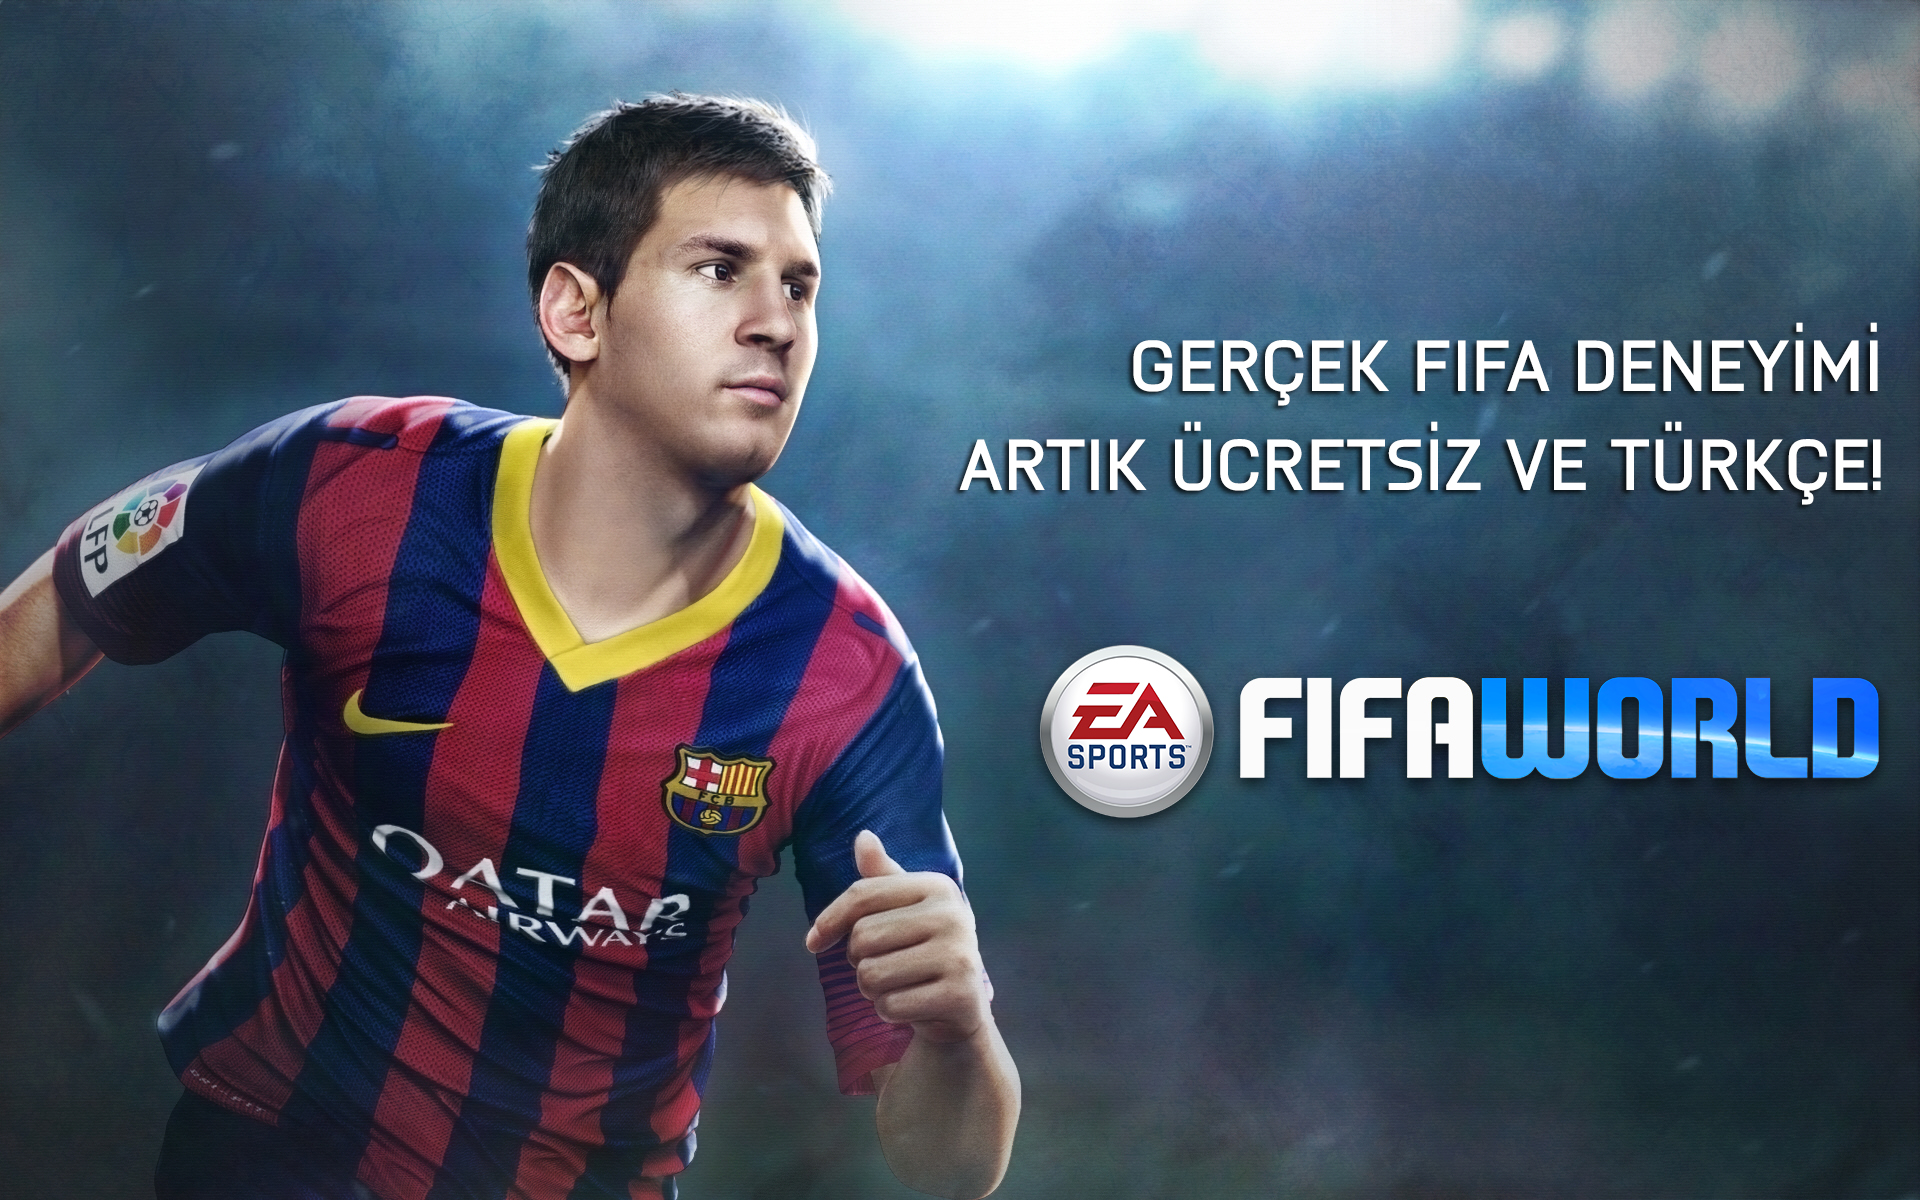 FIFA World'ün beta sürümü Türkiye'de!